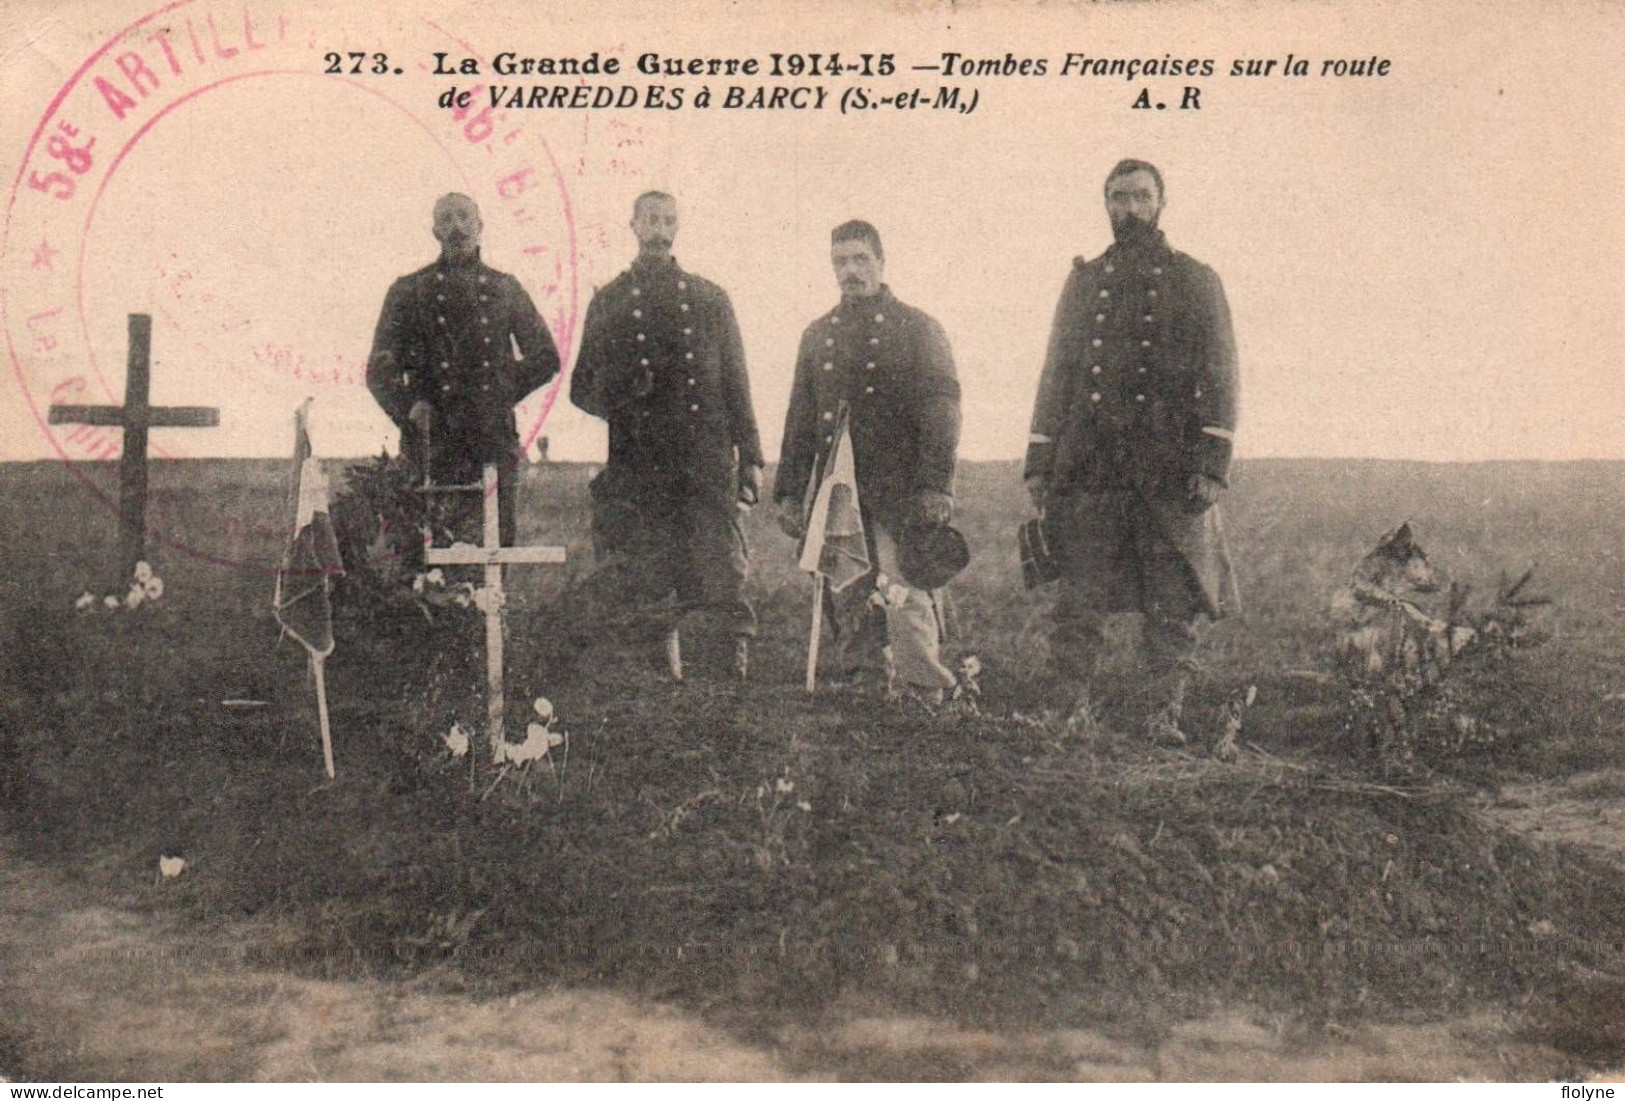 Militaria - Ww1 - Tombes Françaises Sur La Route De Varreddes à Barcy - Cachet Militaire 58ème Régiment D'artillerie - Weltkrieg 1914-18